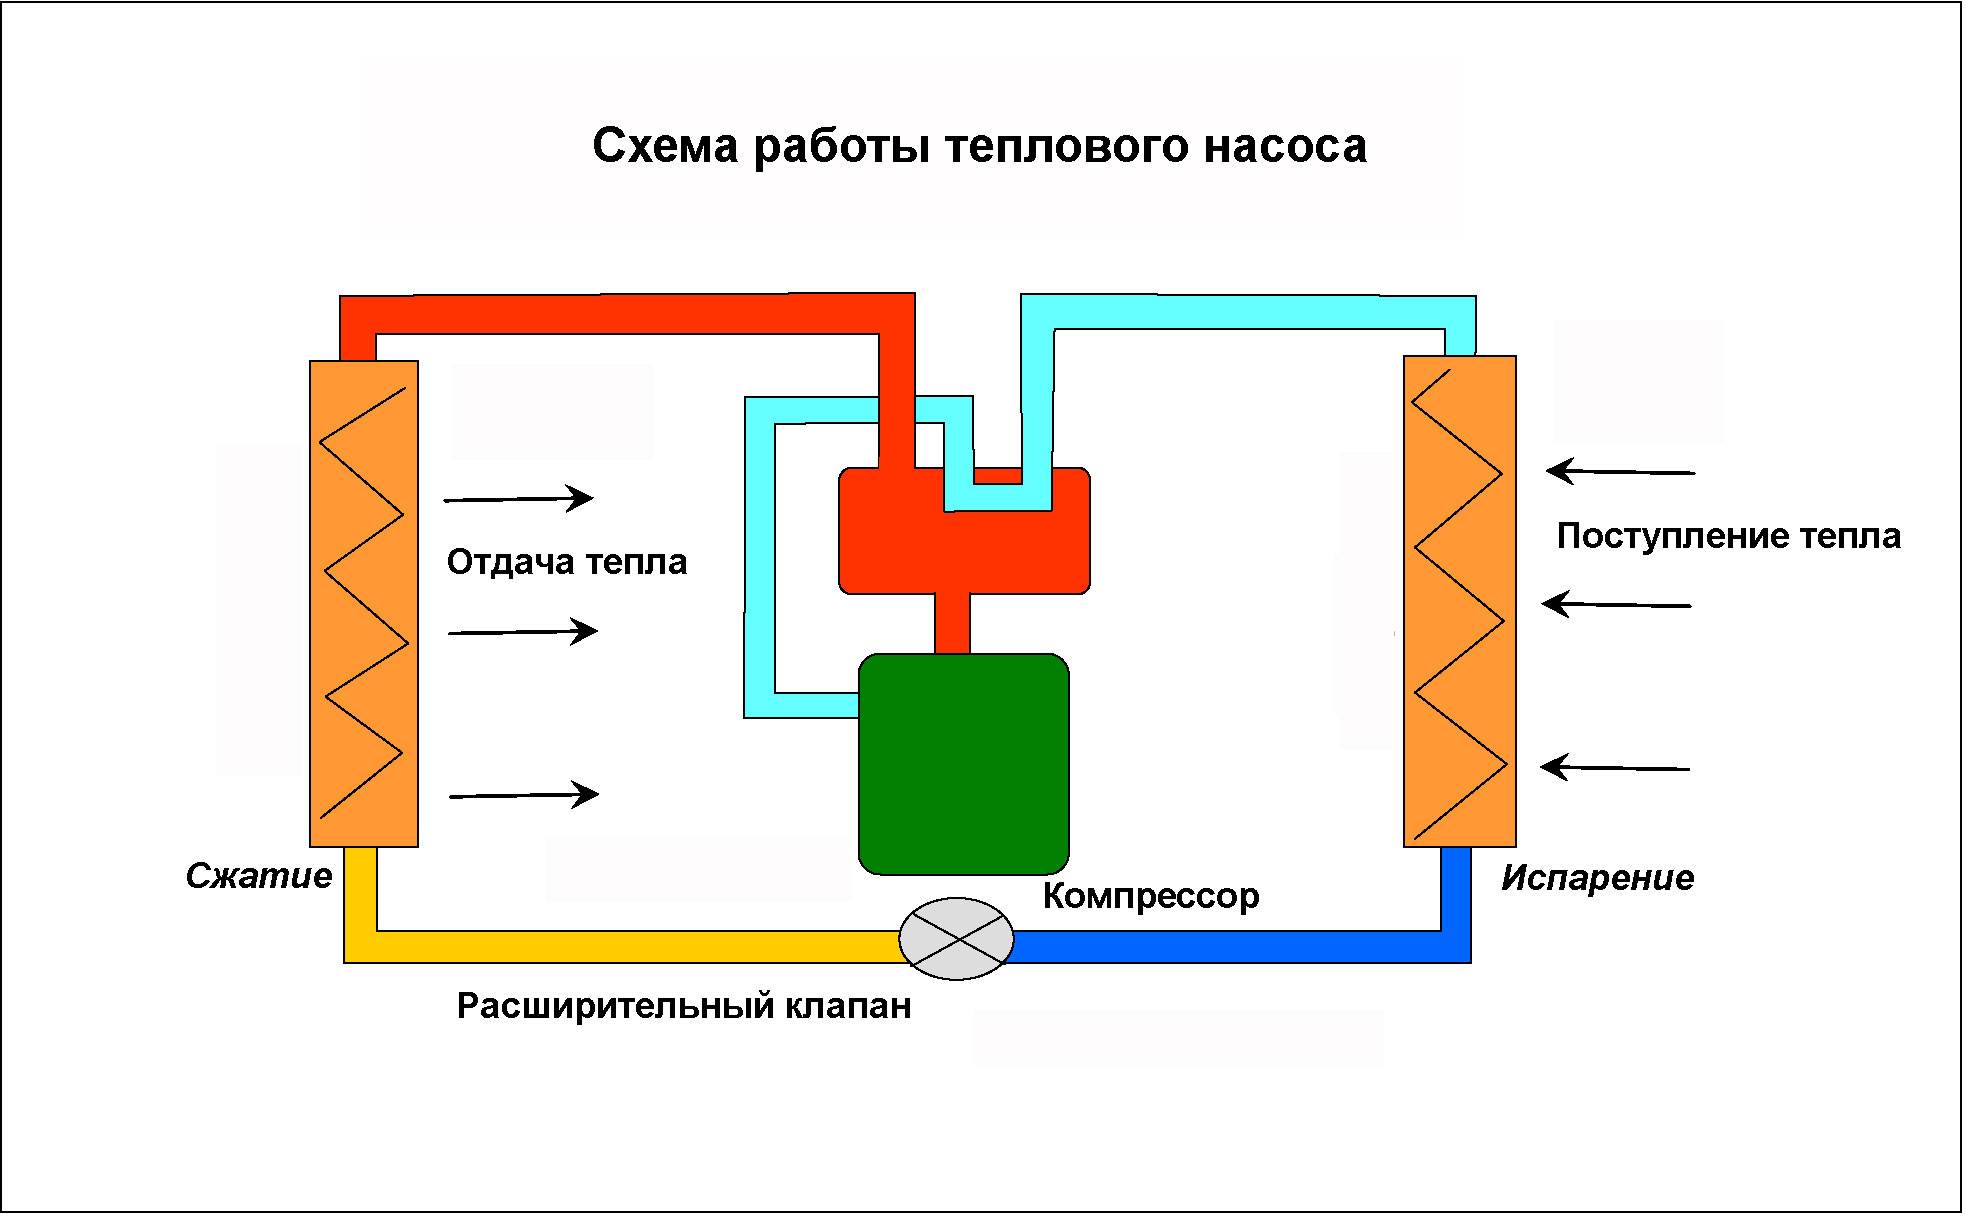 Тепловой нанос для отопления: разновидности, принцип работы, установка